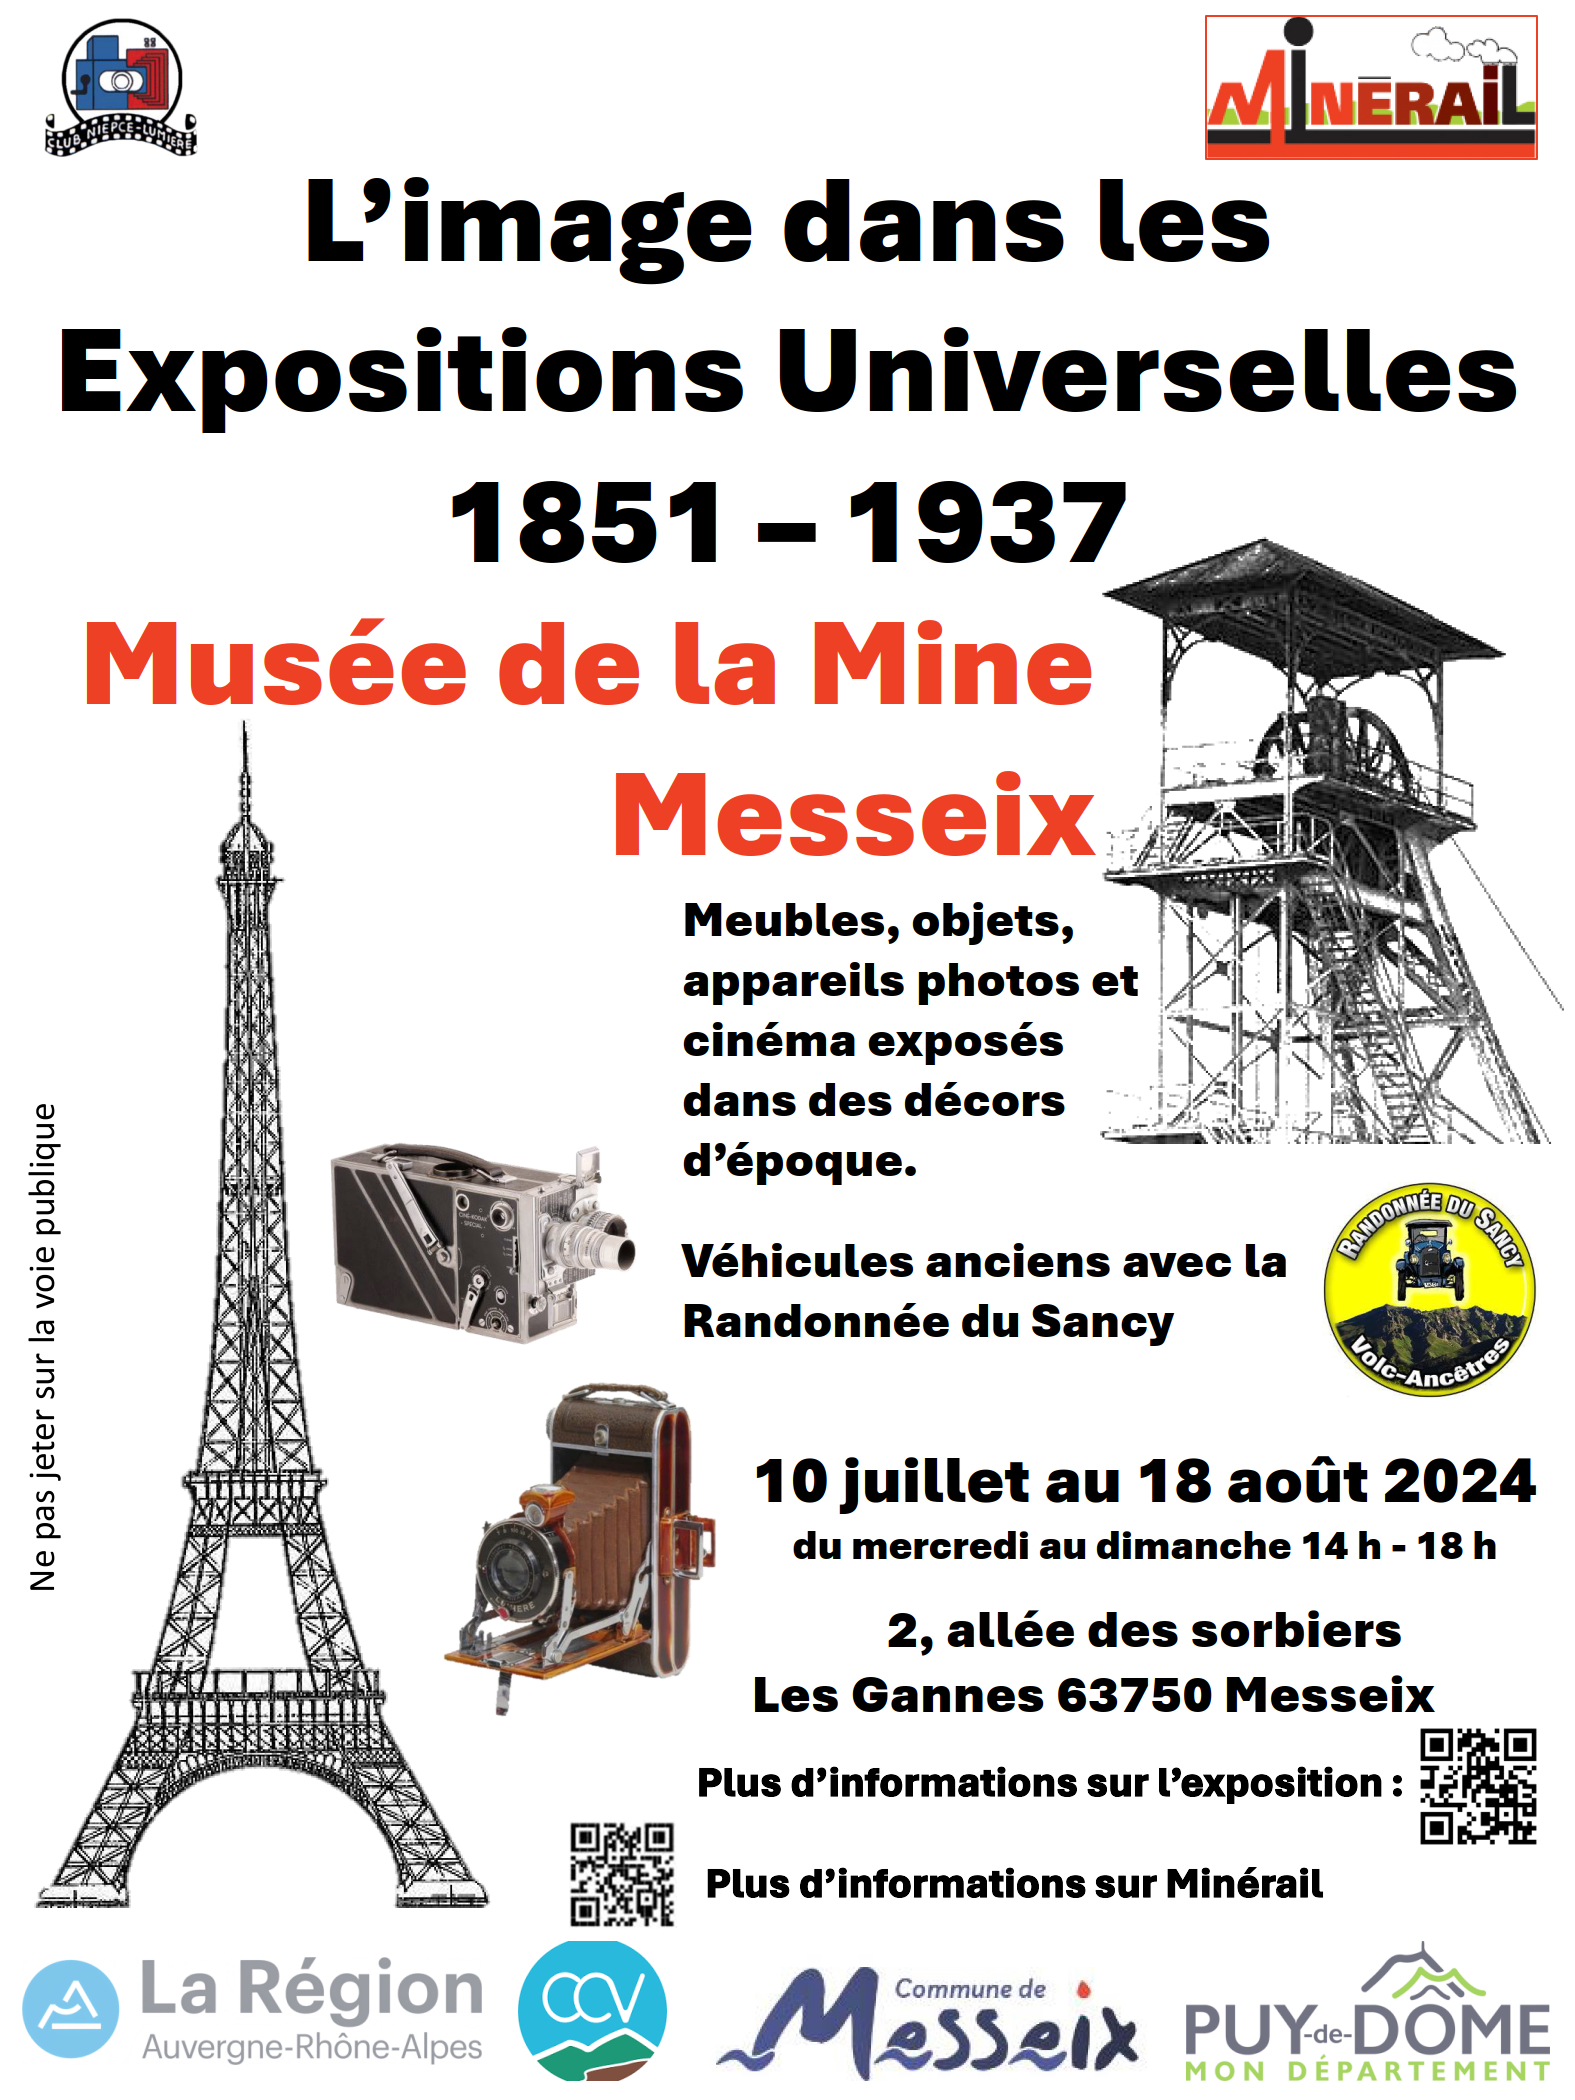 Messeix - L'image dans les Expositions Universelles 1851-1937